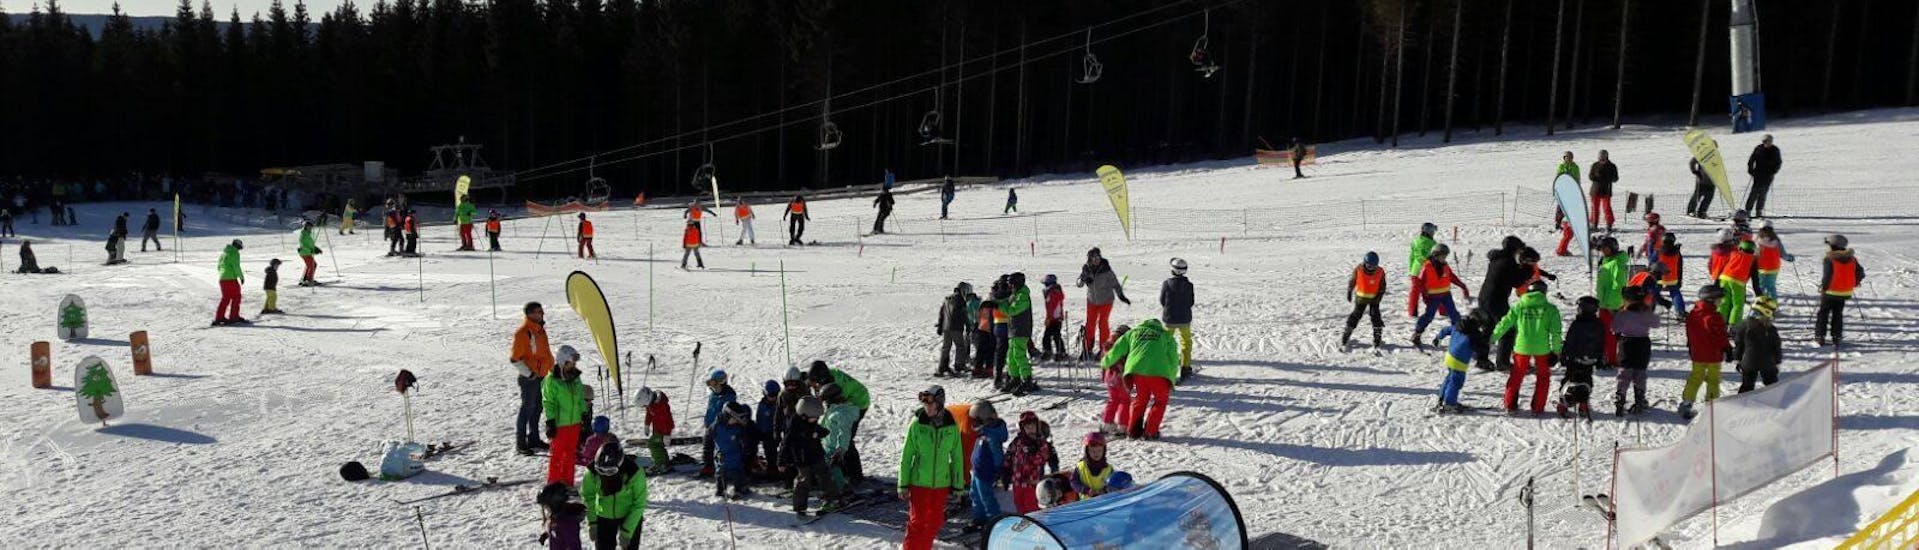 Lezioni di sci per bambini a partire da 9 anni principianti assoluti.